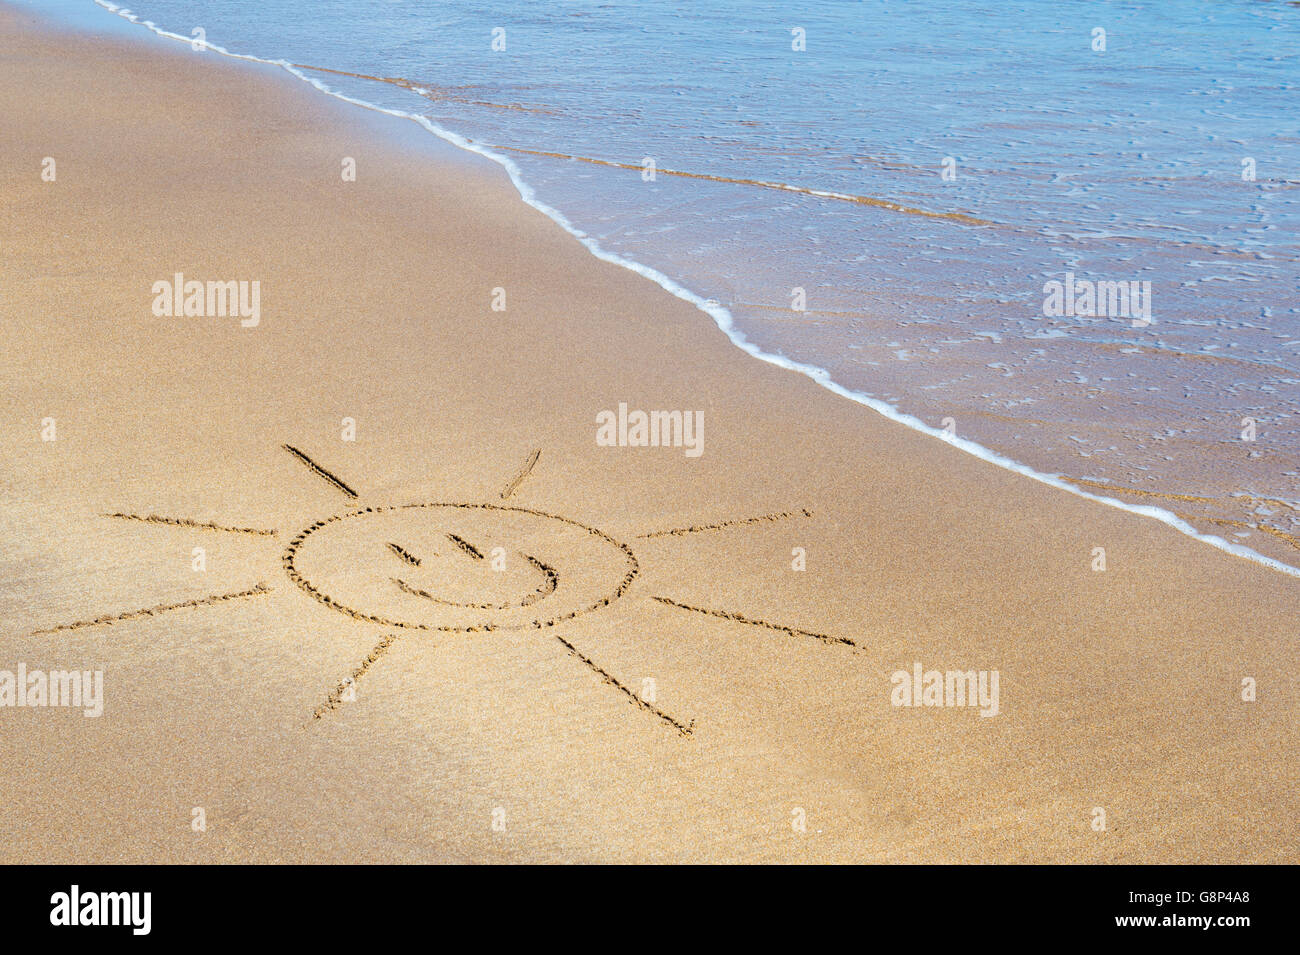 Smiley face sun disegno su una spiaggia. Regno Unito Foto Stock